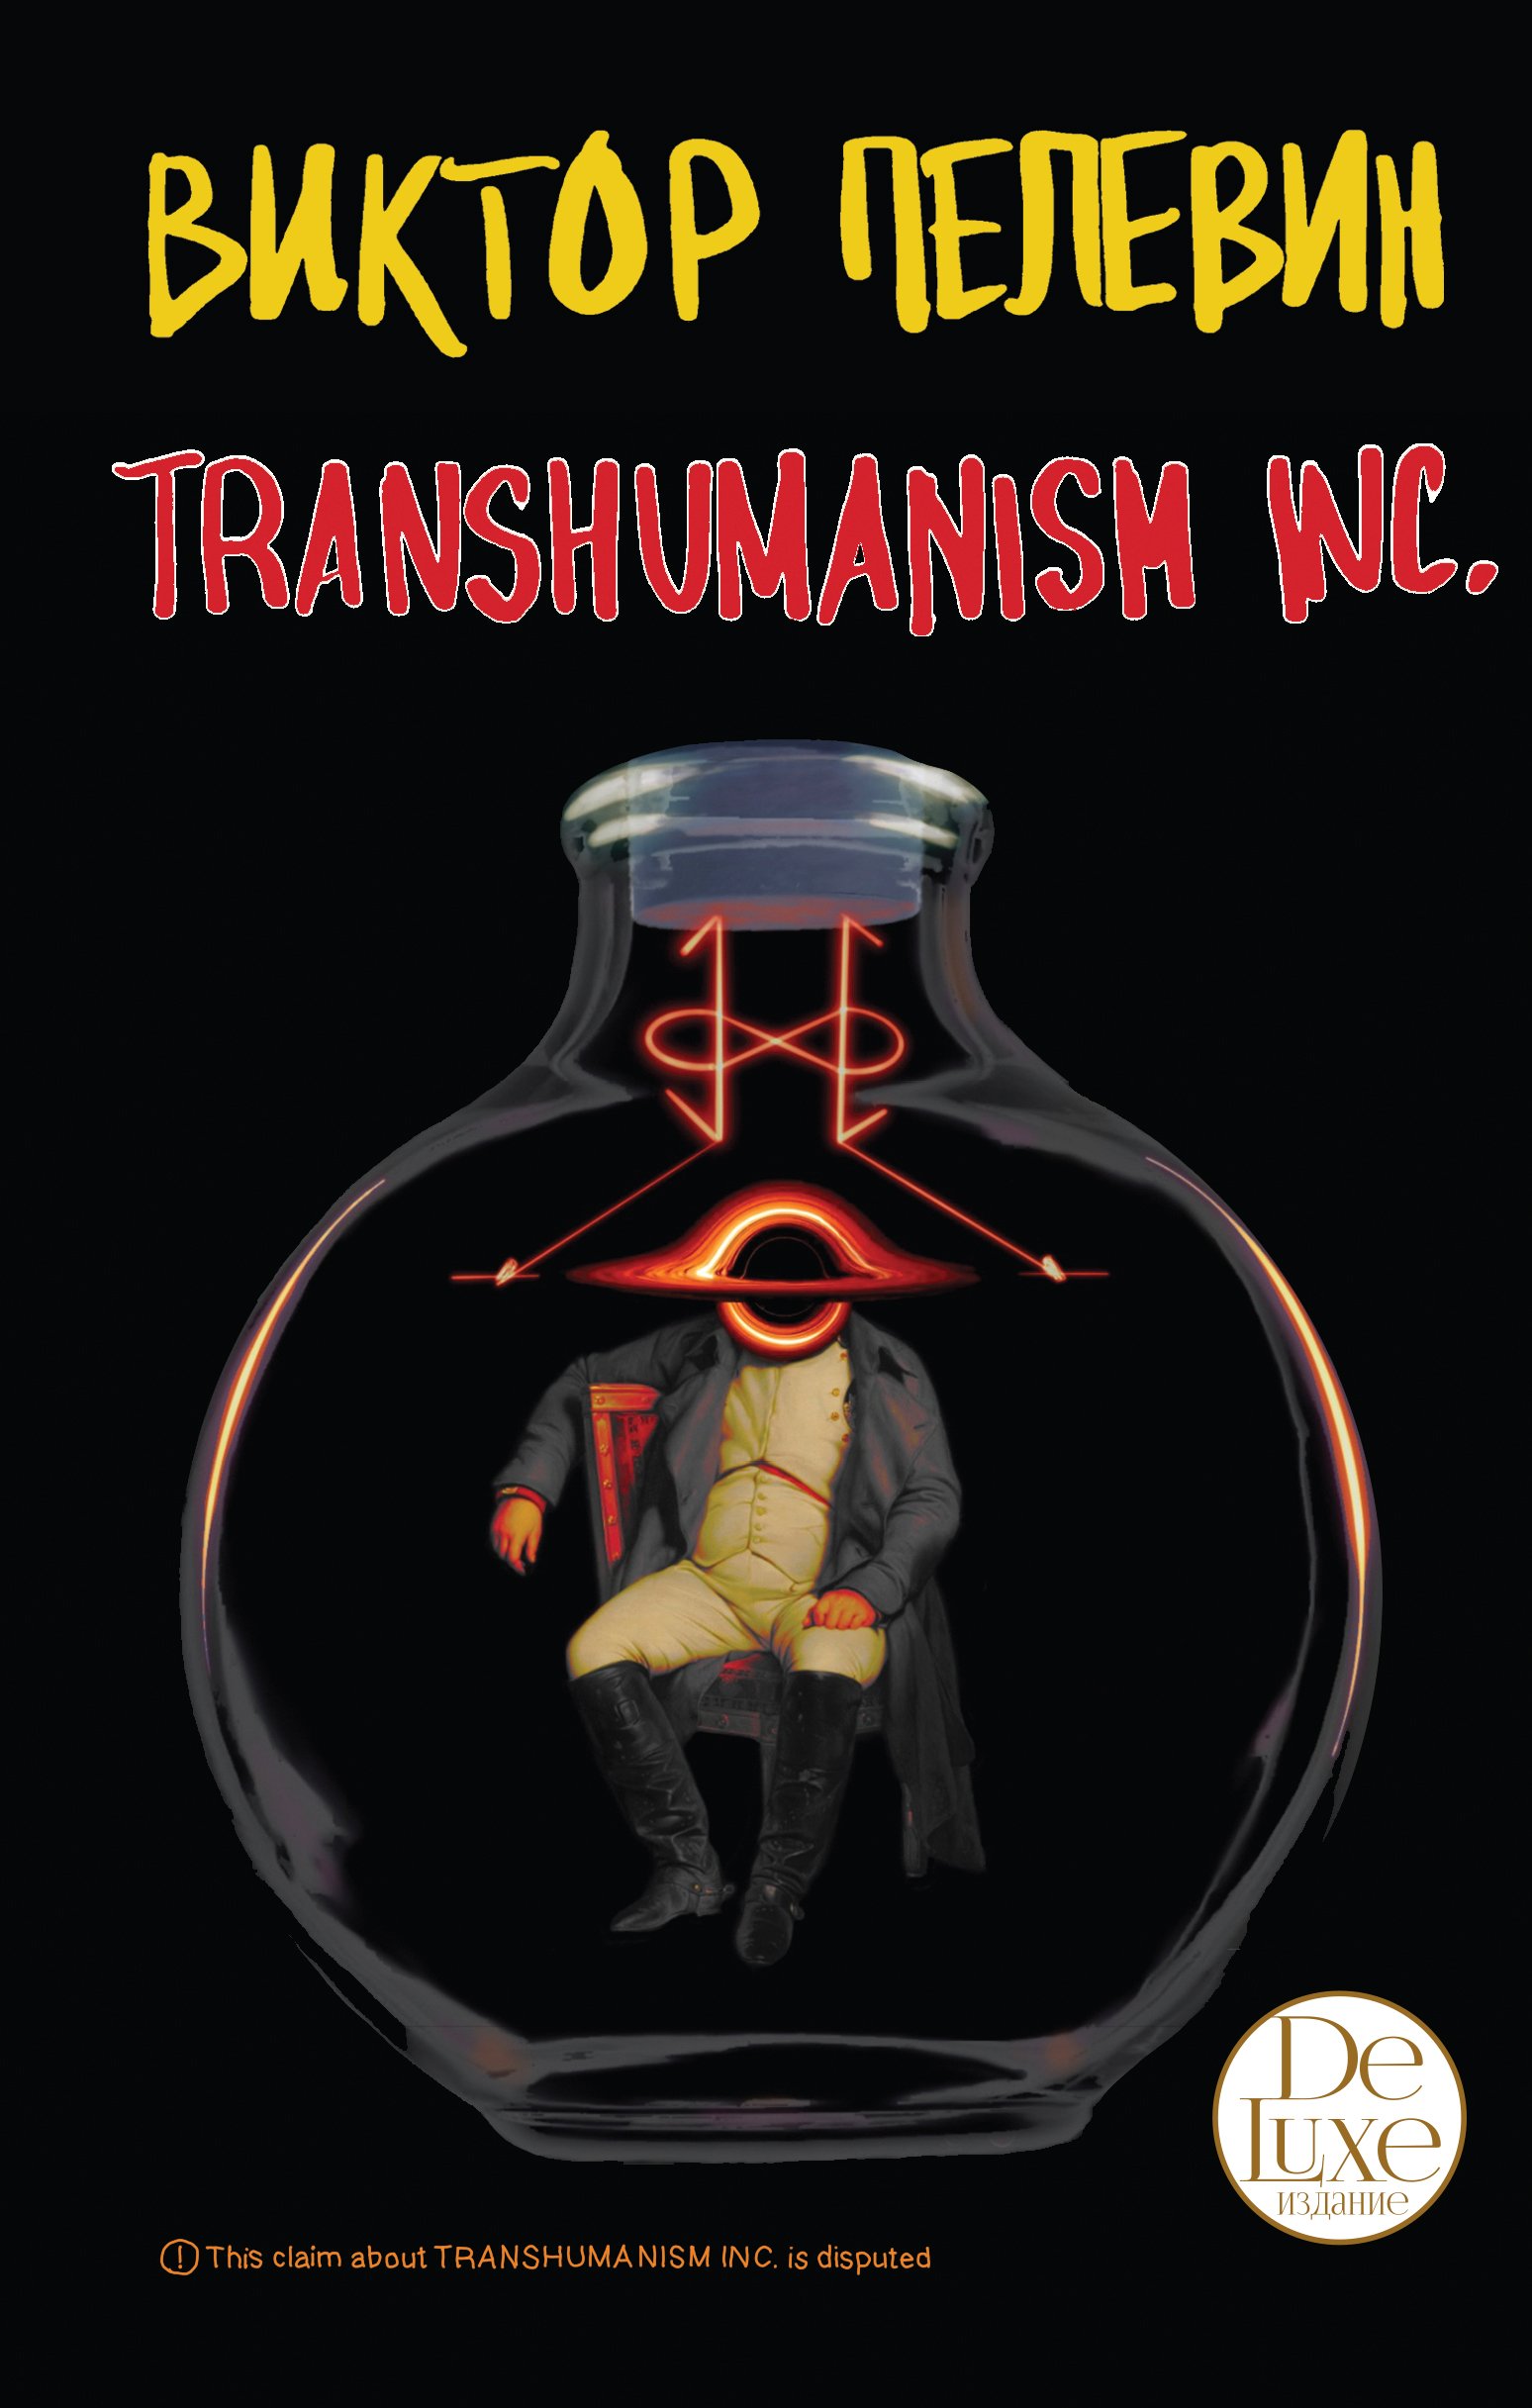 Пелевин Виктор Олегович - Transhumanism inc. Подарочное издание (Трансгуманизм Inc.)